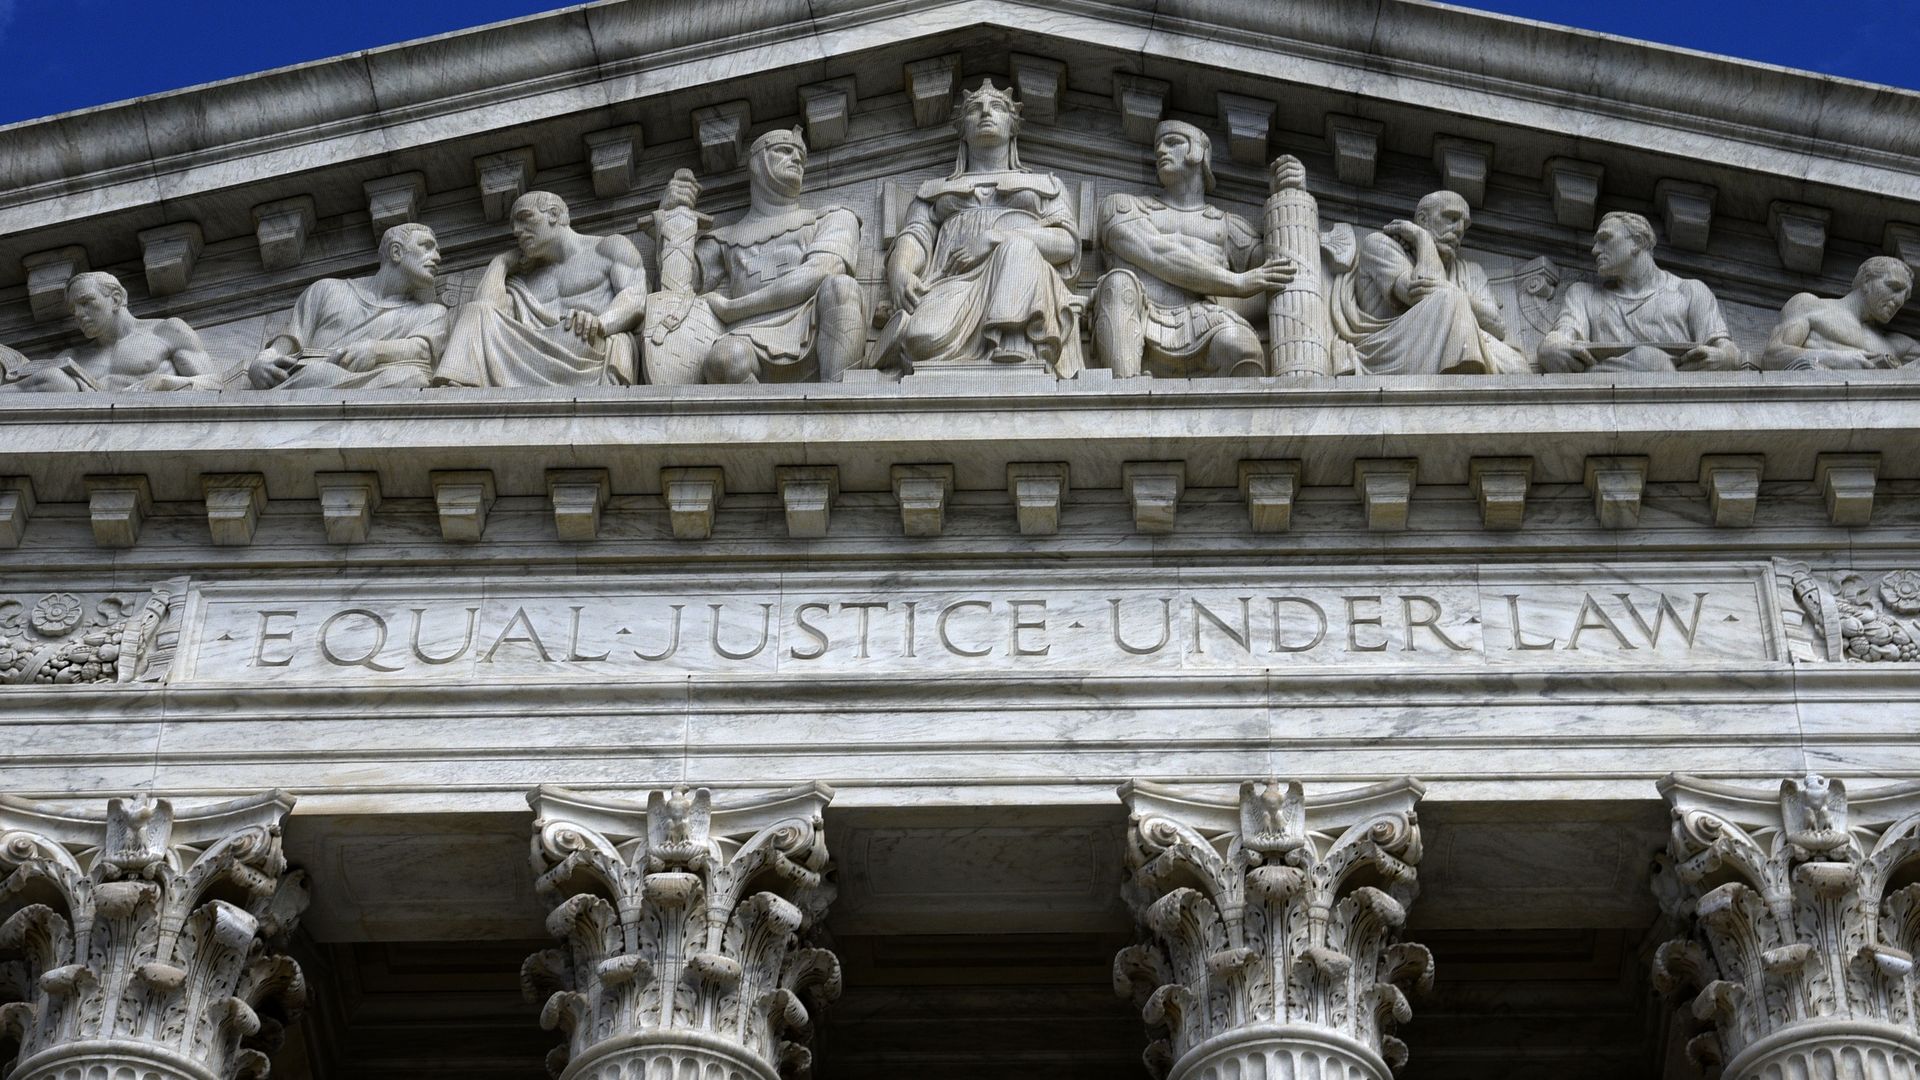 Supreme Court facade